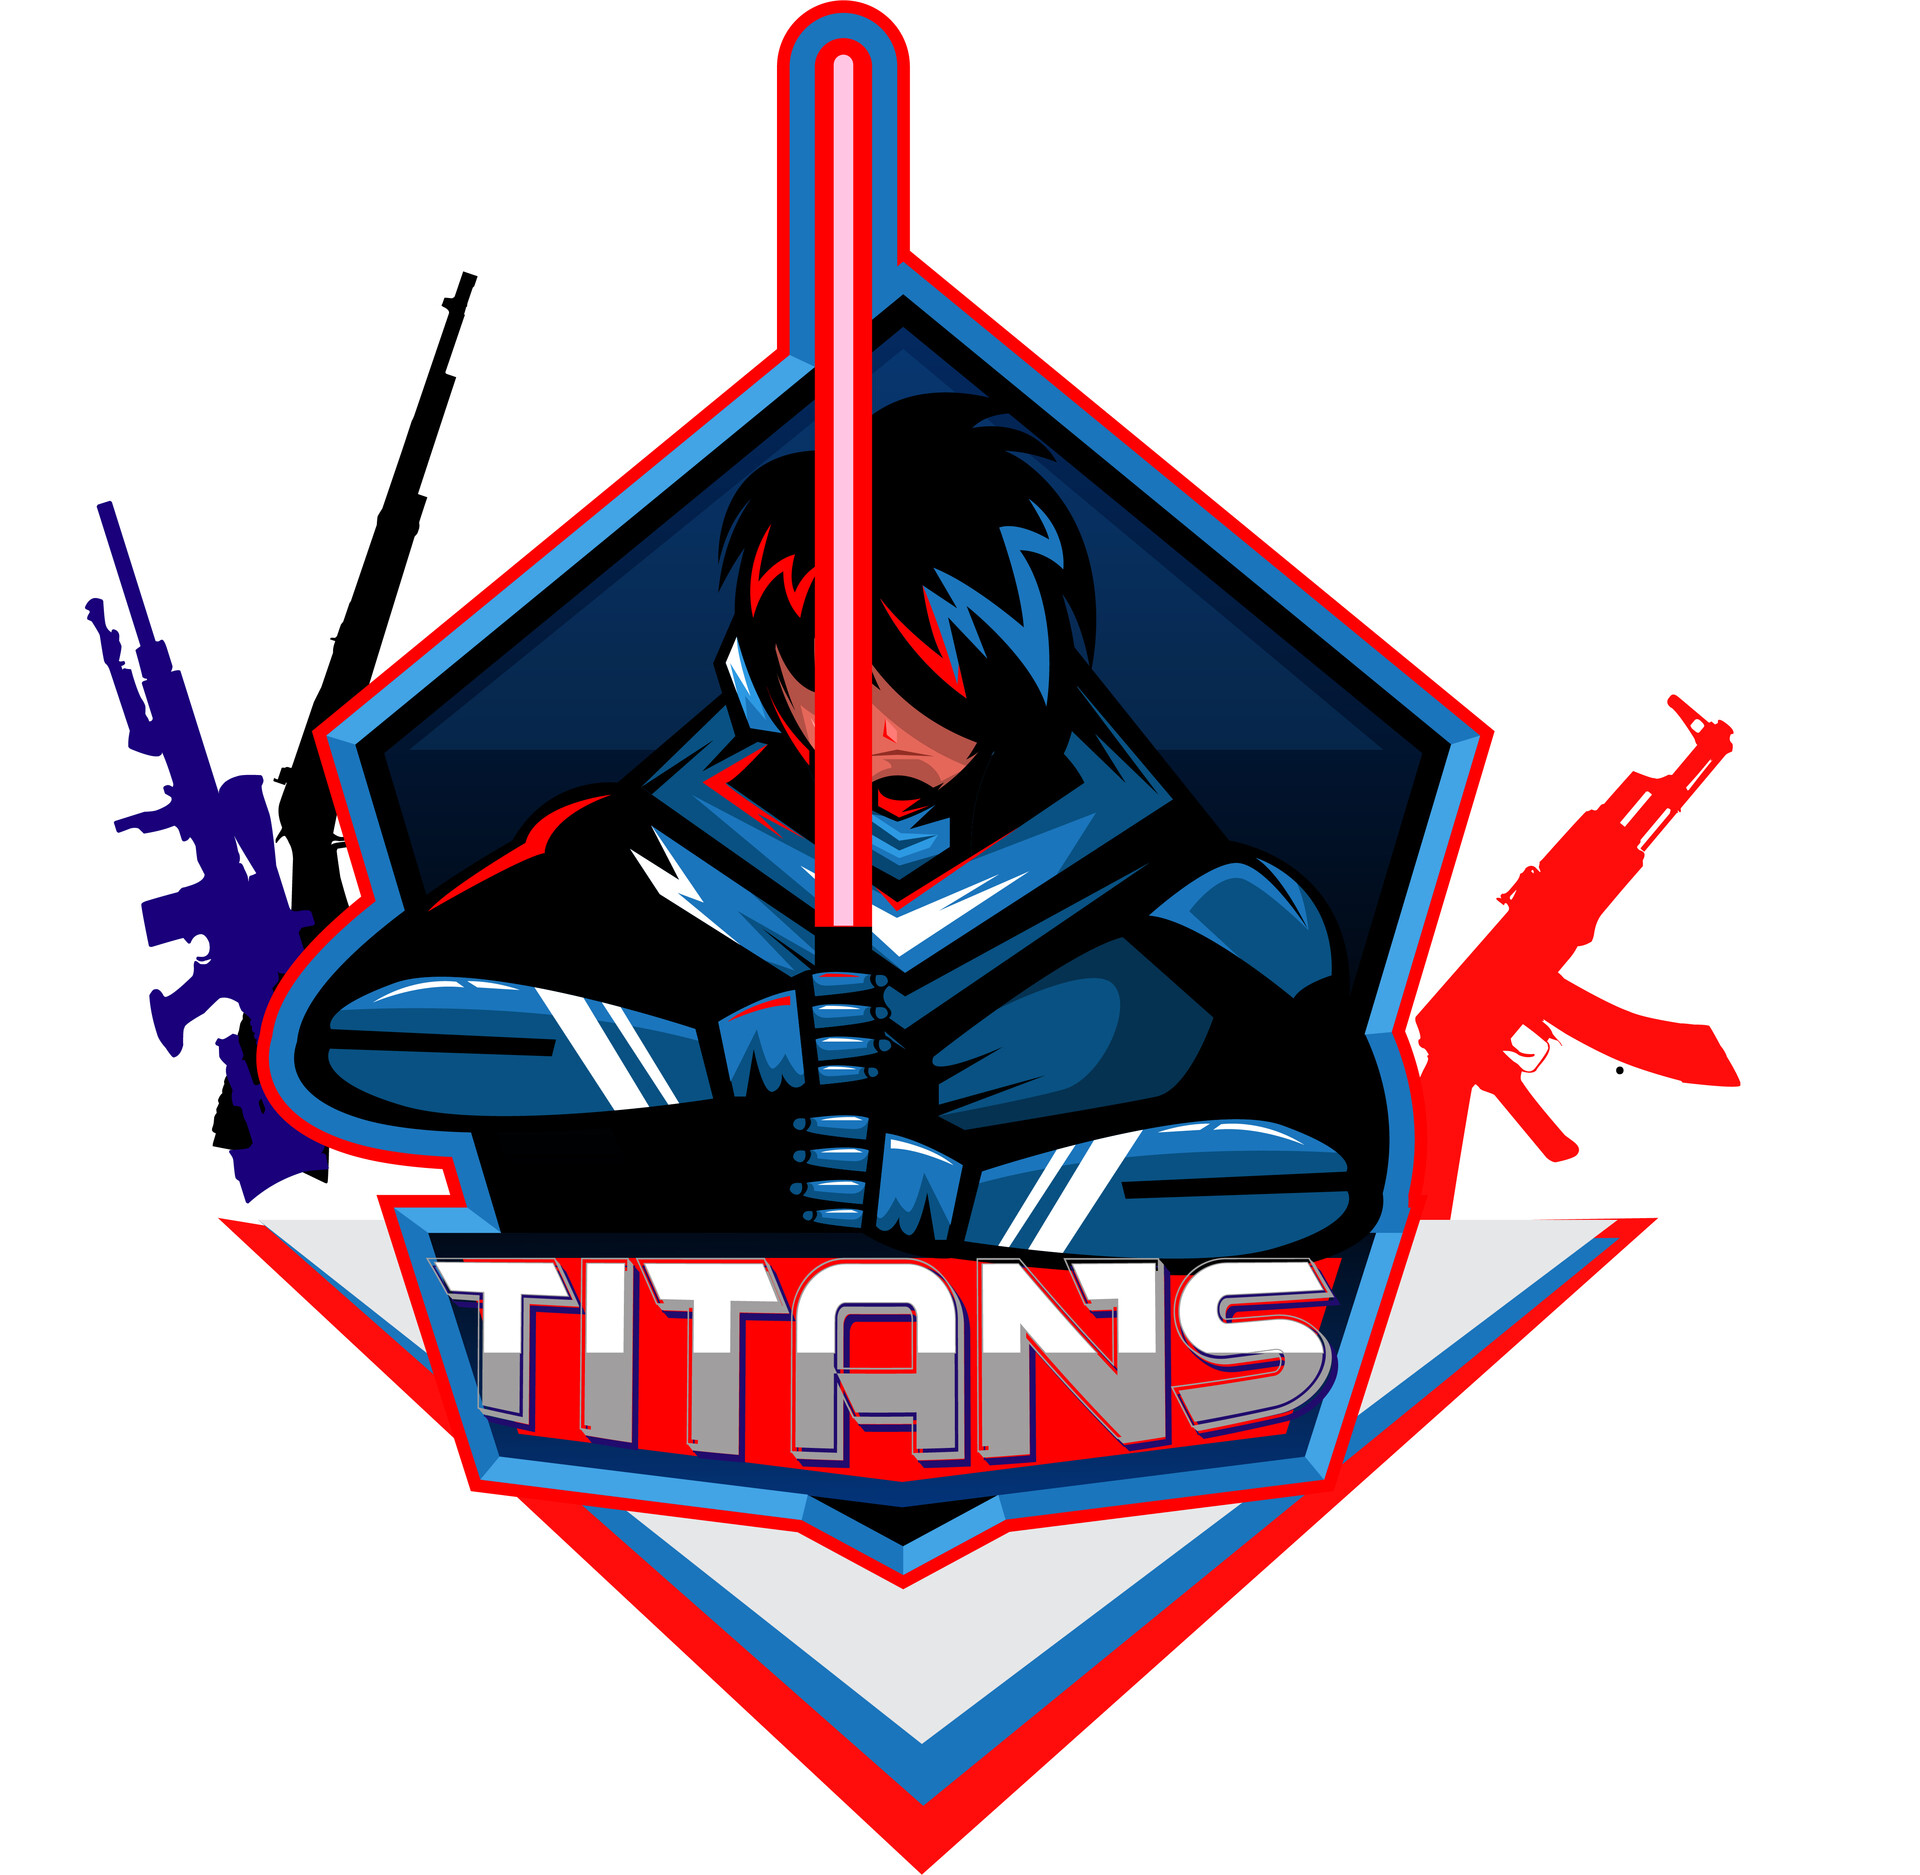 ArtStation - Titans Gaming Logo